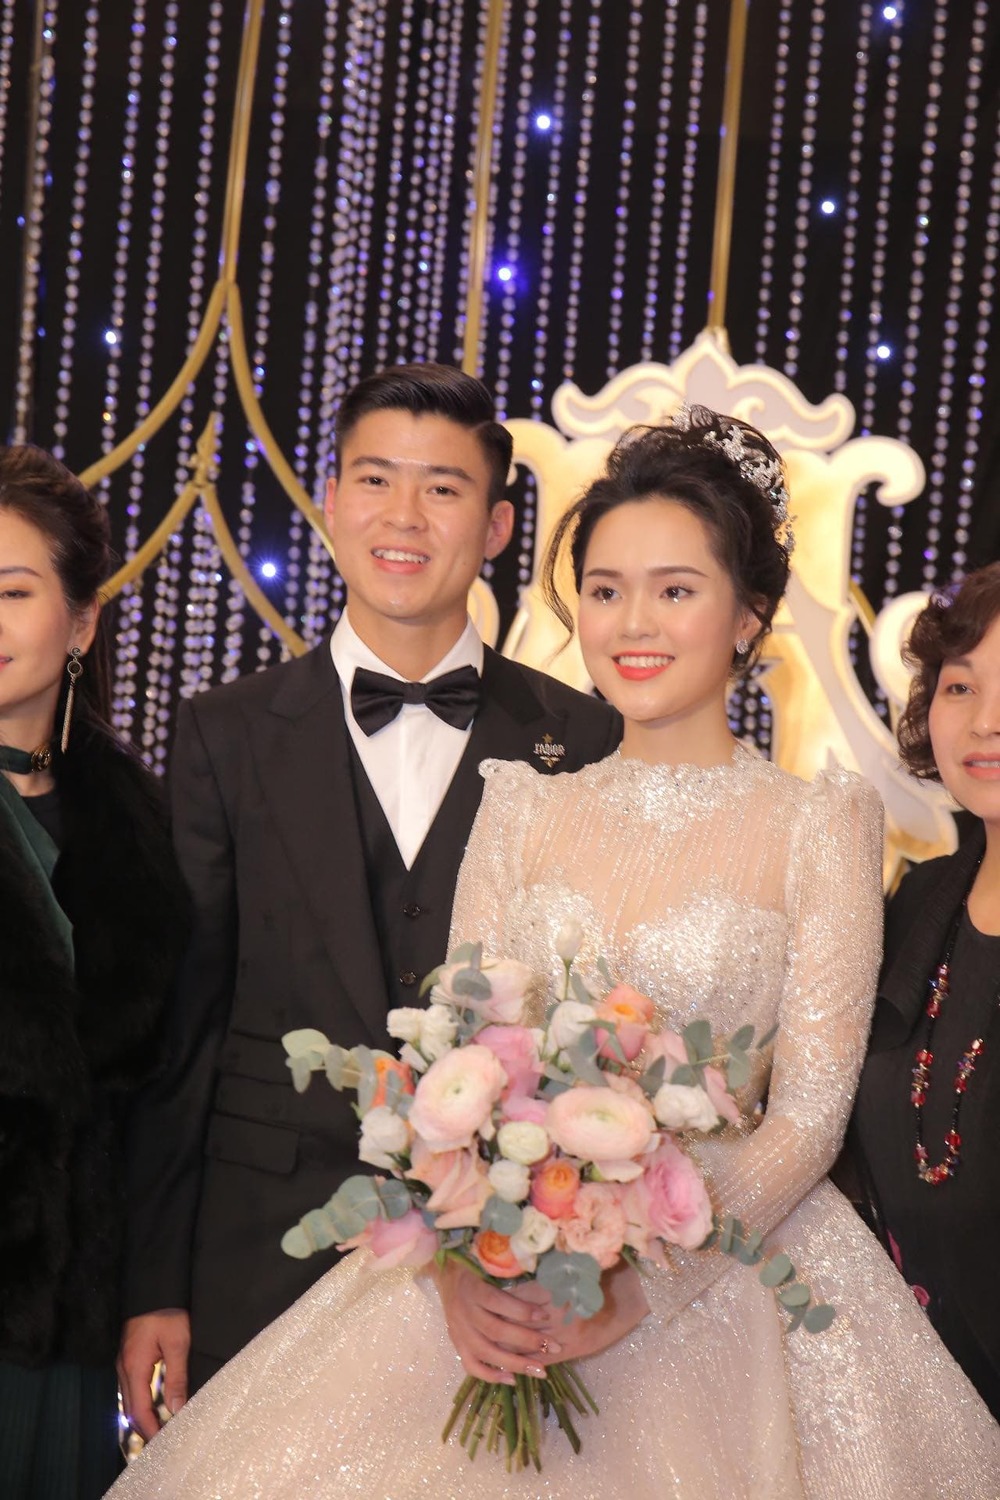  
Đám cưới được diễn ra tại một khách sạn sang trọng ở Hà Nội. - Tin sao Viet - Tin tuc sao Viet - Scandal sao Viet - Tin tuc cua Sao - Tin cua Sao